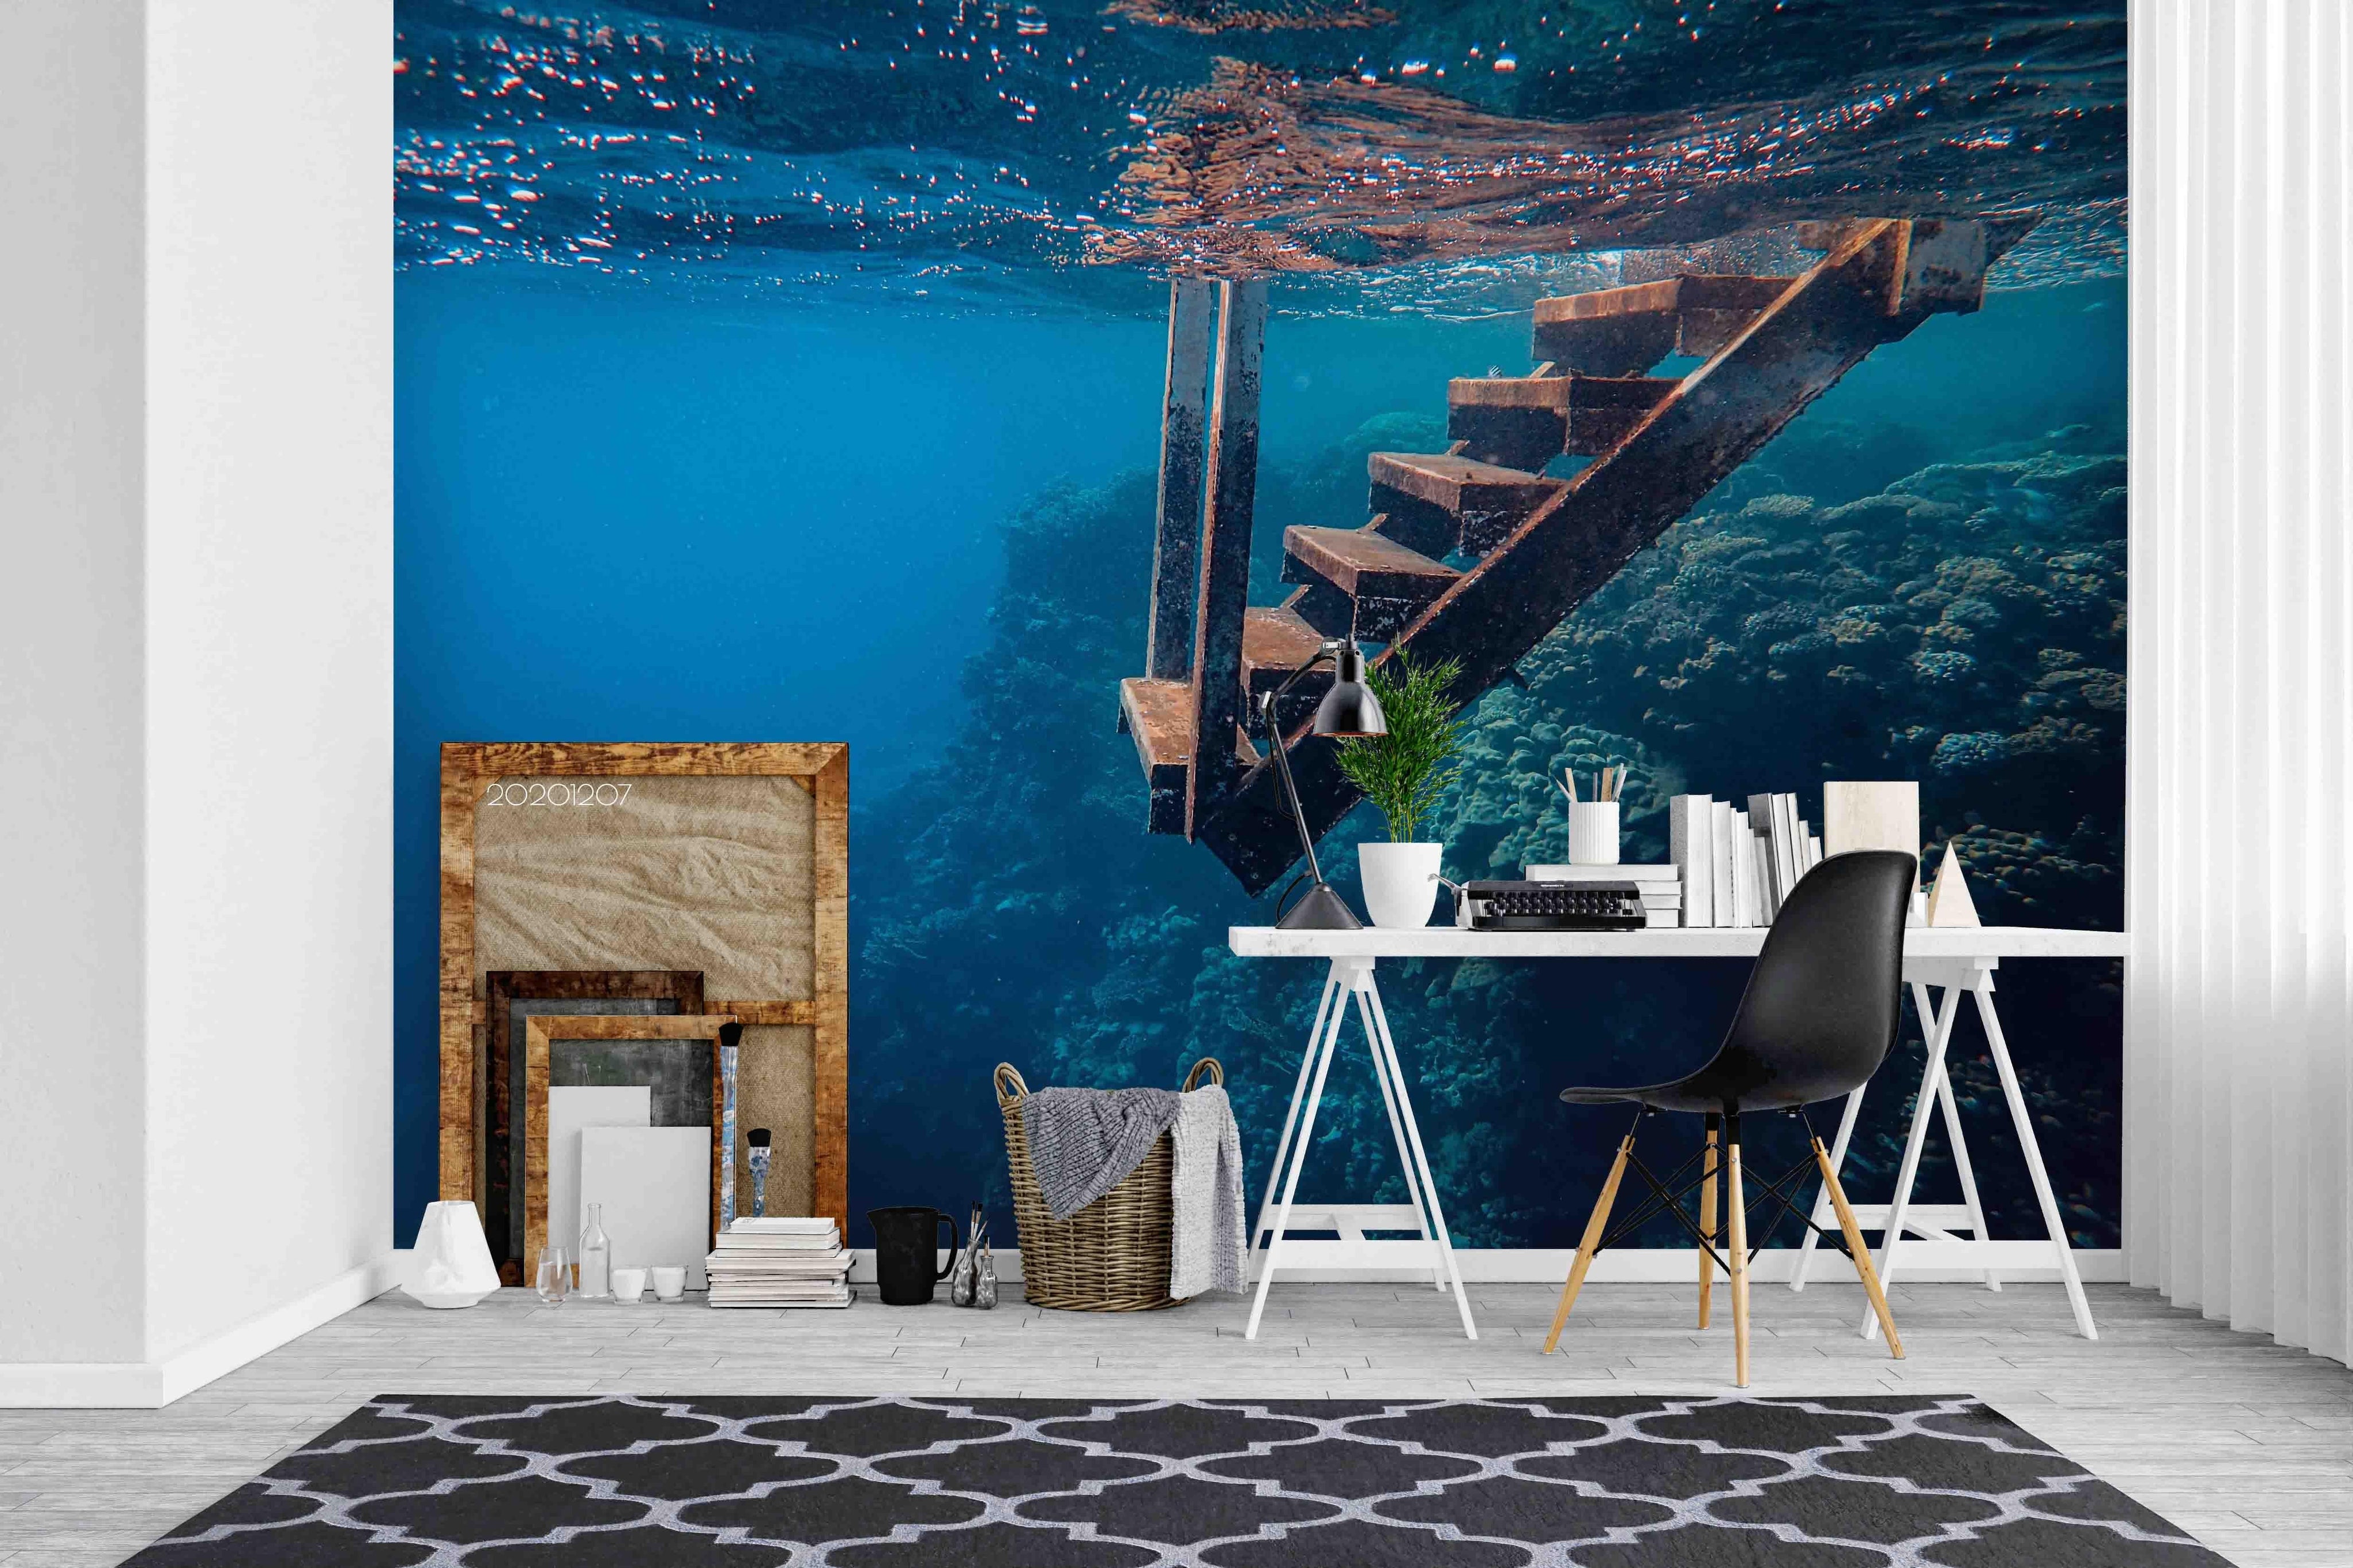 3D Pexels Deep Blue Ocean Wooden Stairs Wall Mural Wallpaper LXL- Jess Art Decoration